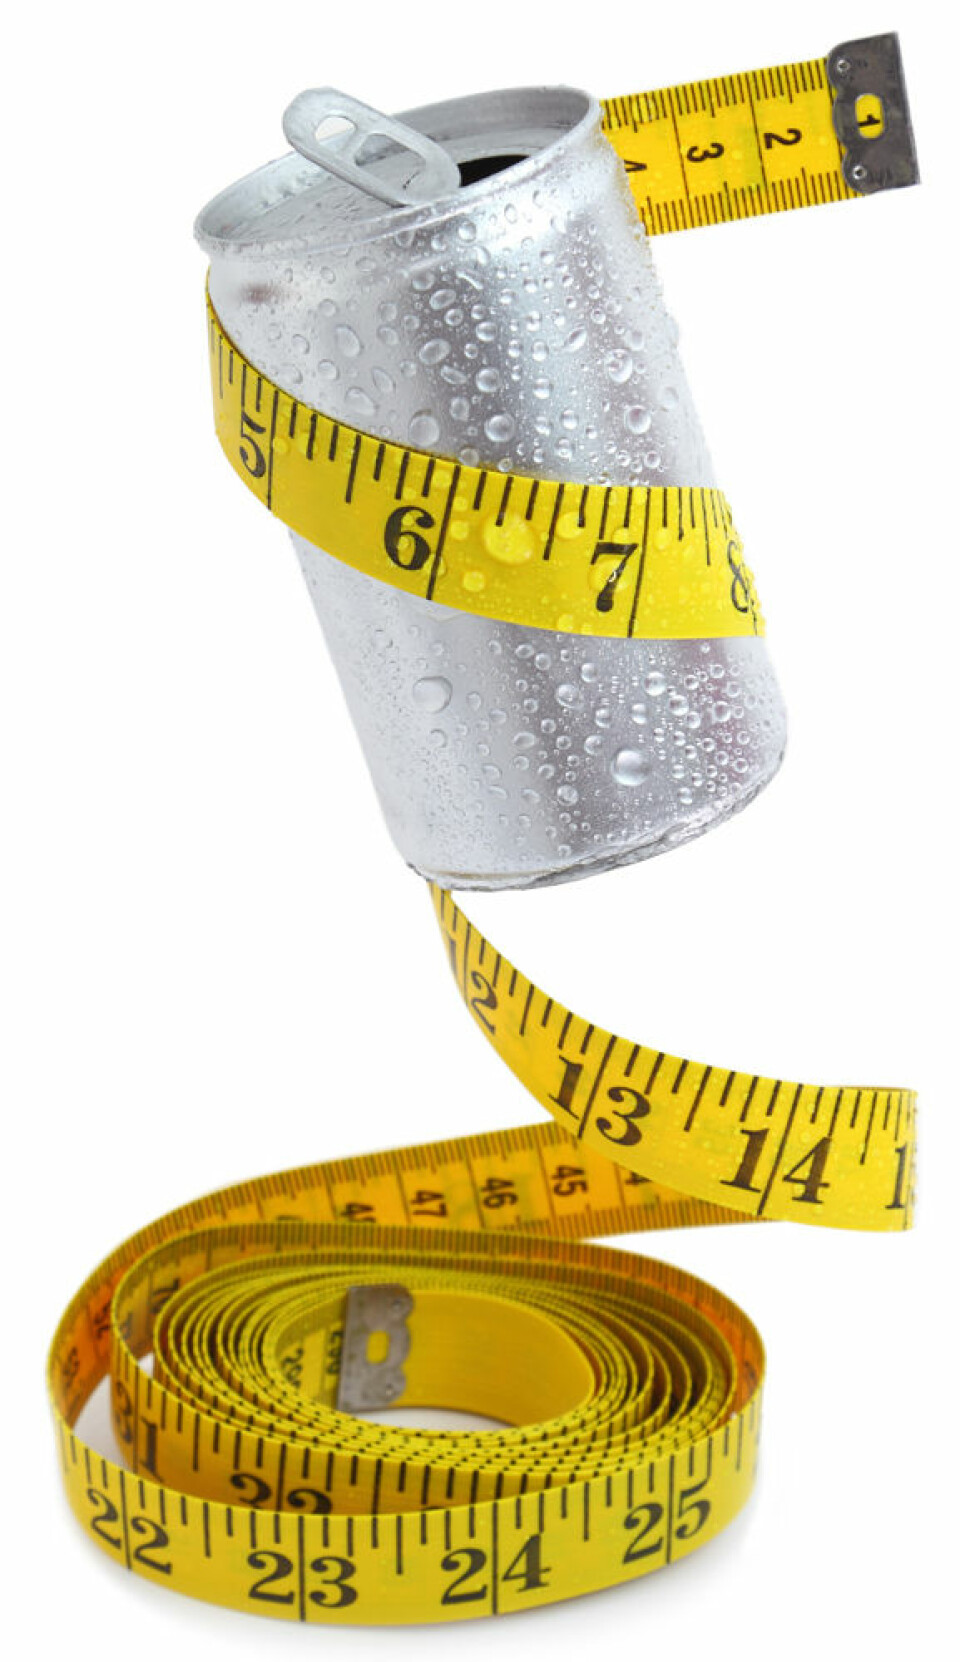 Slankere som drakk lettbrus, gikk ned 2 kg mer enn kontrollgruppen som drakk vann, viser den amerikanske studien. (Foto: Microstock)